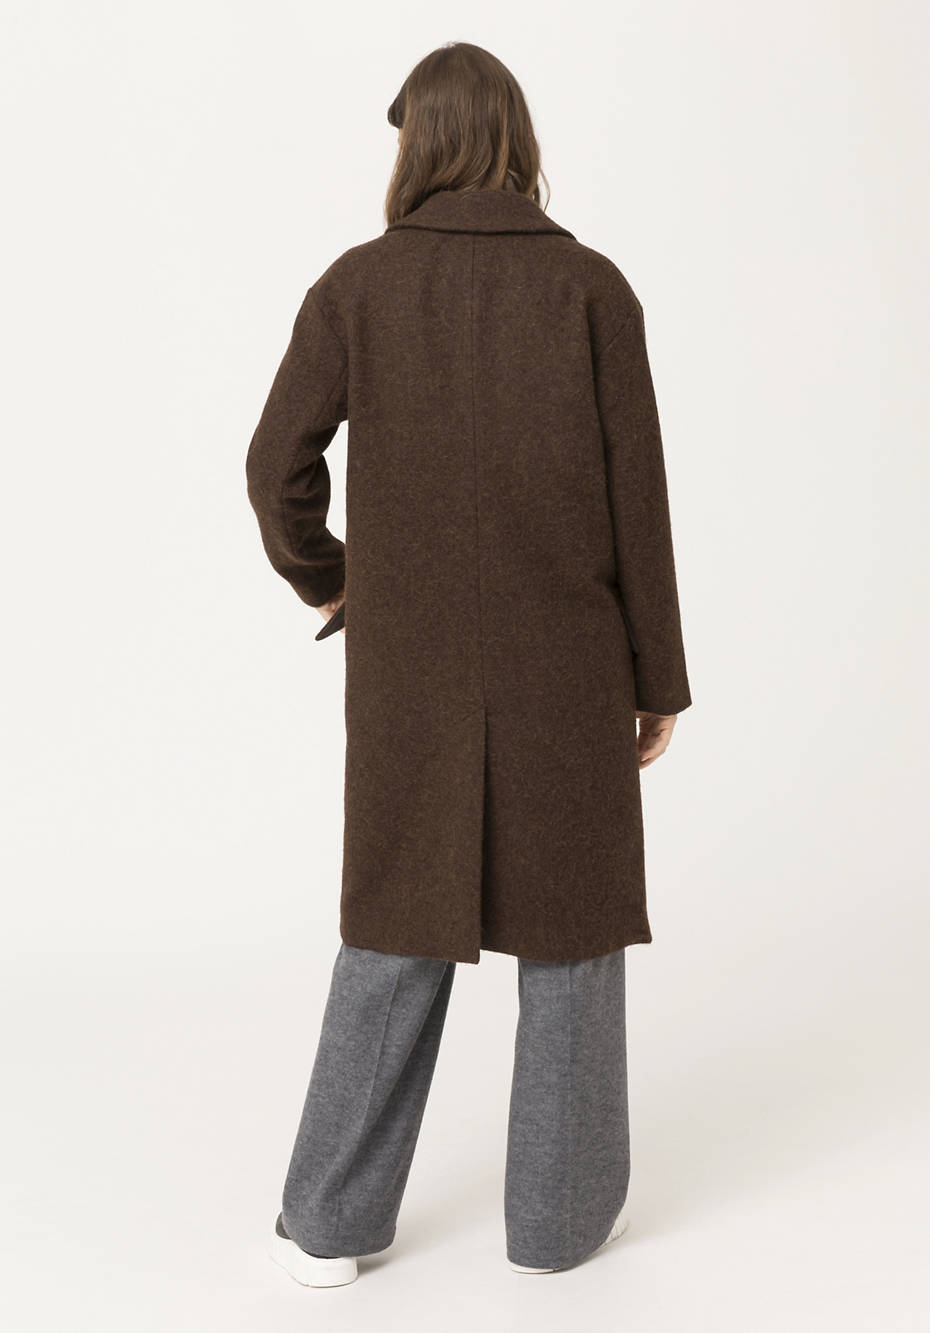 Alpaca coat with virgin wool